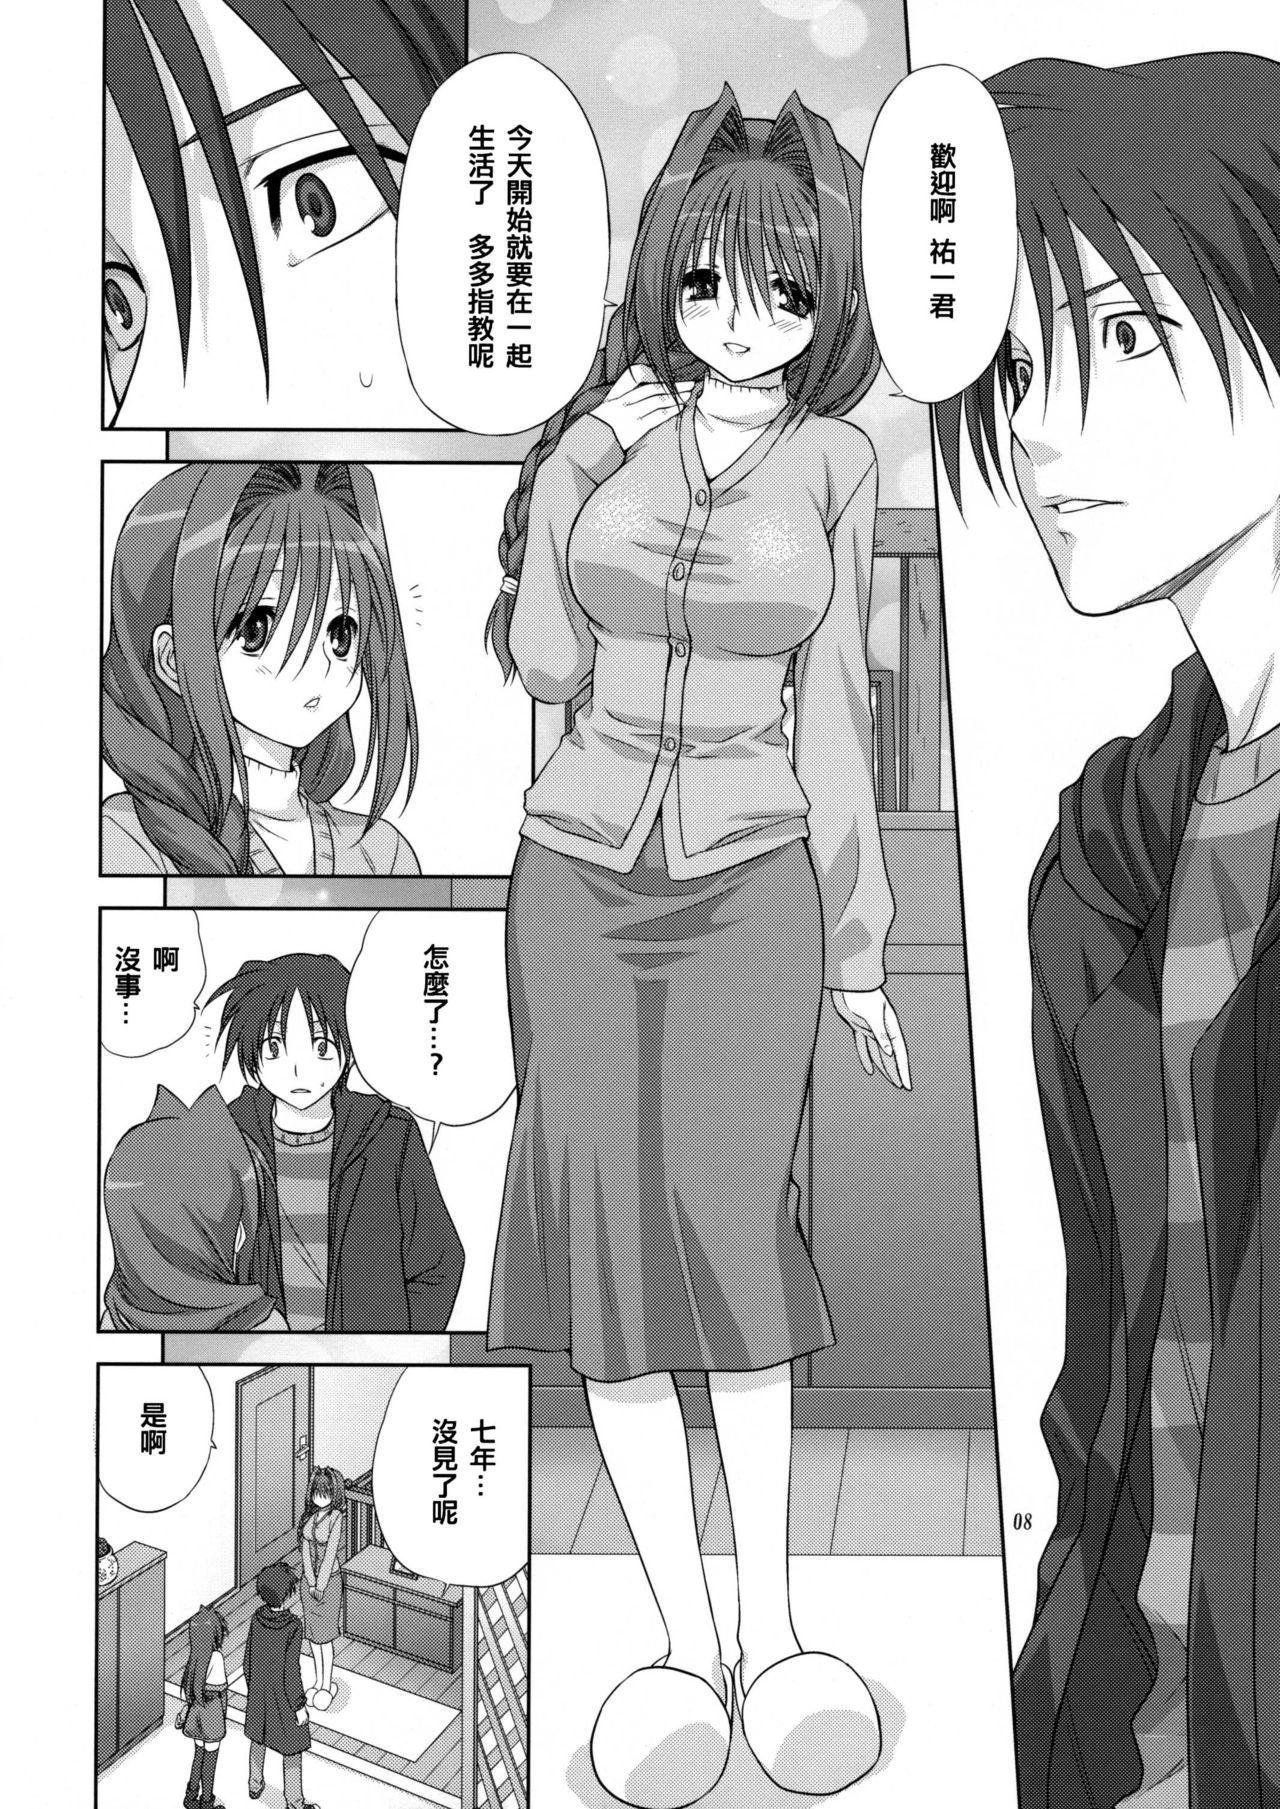 Orgy Akiko-san to Issho 4 - Kanon Whore - Page 7